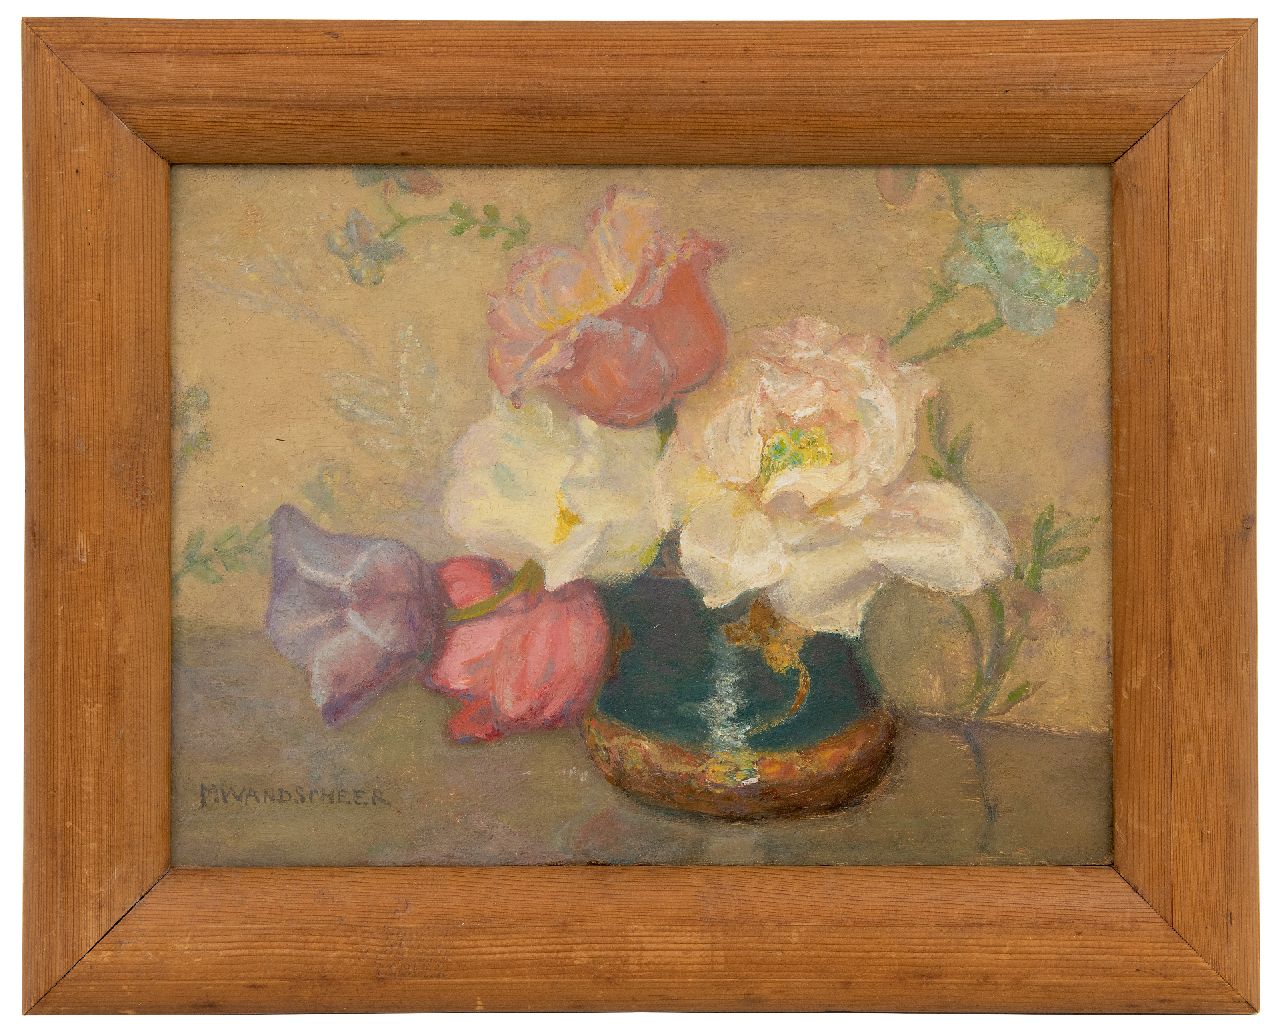 Wandscheer M.W.  | Maria Wilhelmina 'Marie' Wandscheer | Schilderijen te koop aangeboden | Gemberpot met tulpen, olieverf op paneel 23,4 x 31,8 cm, gesigneerd linksonder